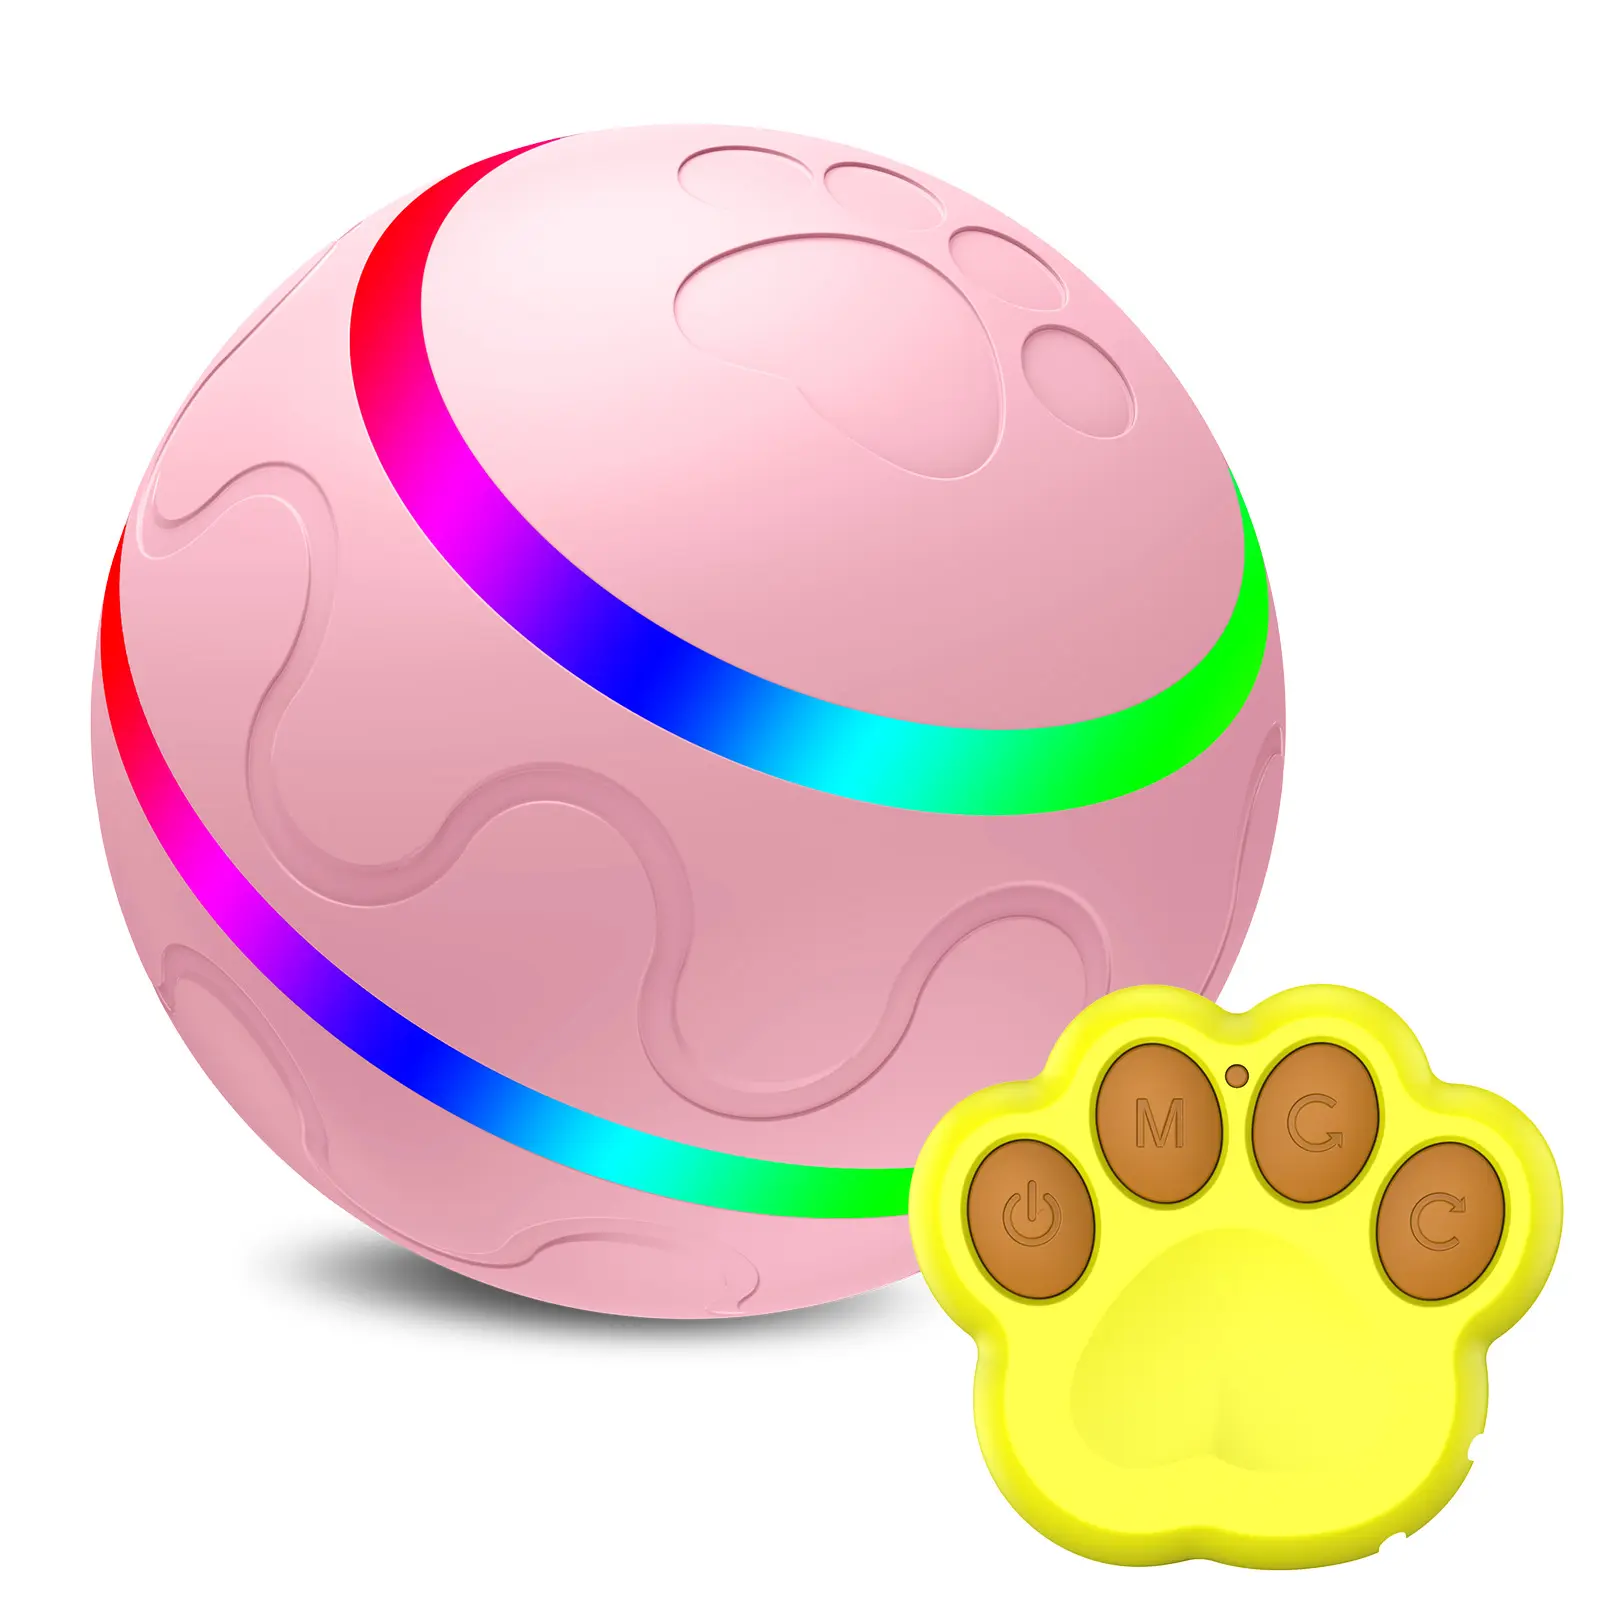 Bola de brinquedo interativo inteligente, bola de brinquedo com luzes led controle remoto, recarregável por usb, para cachorros